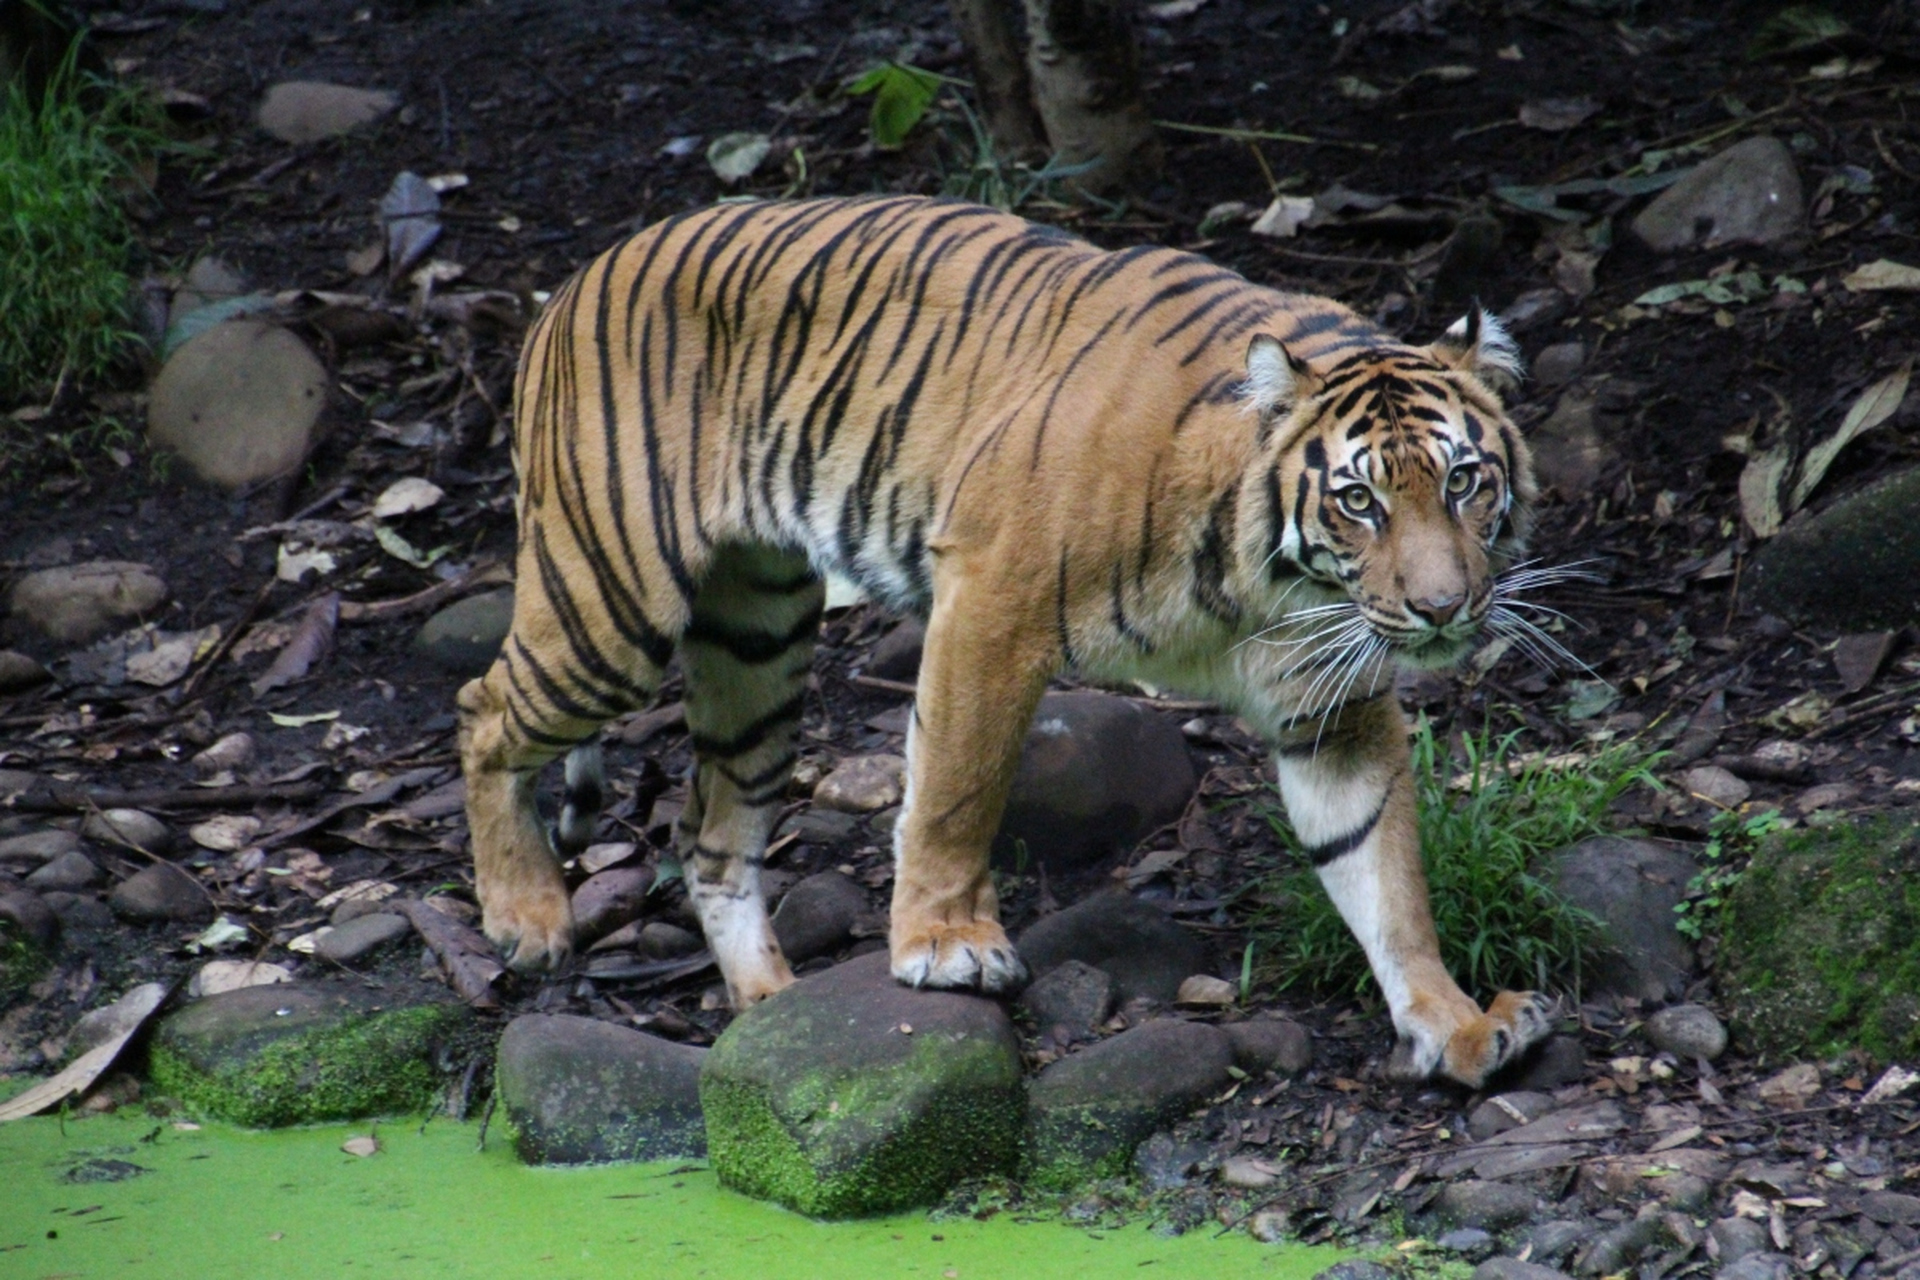 近日,一则阜阳野生动物园 20 只东北虎死亡的消息如惊雷般炸响,迅速